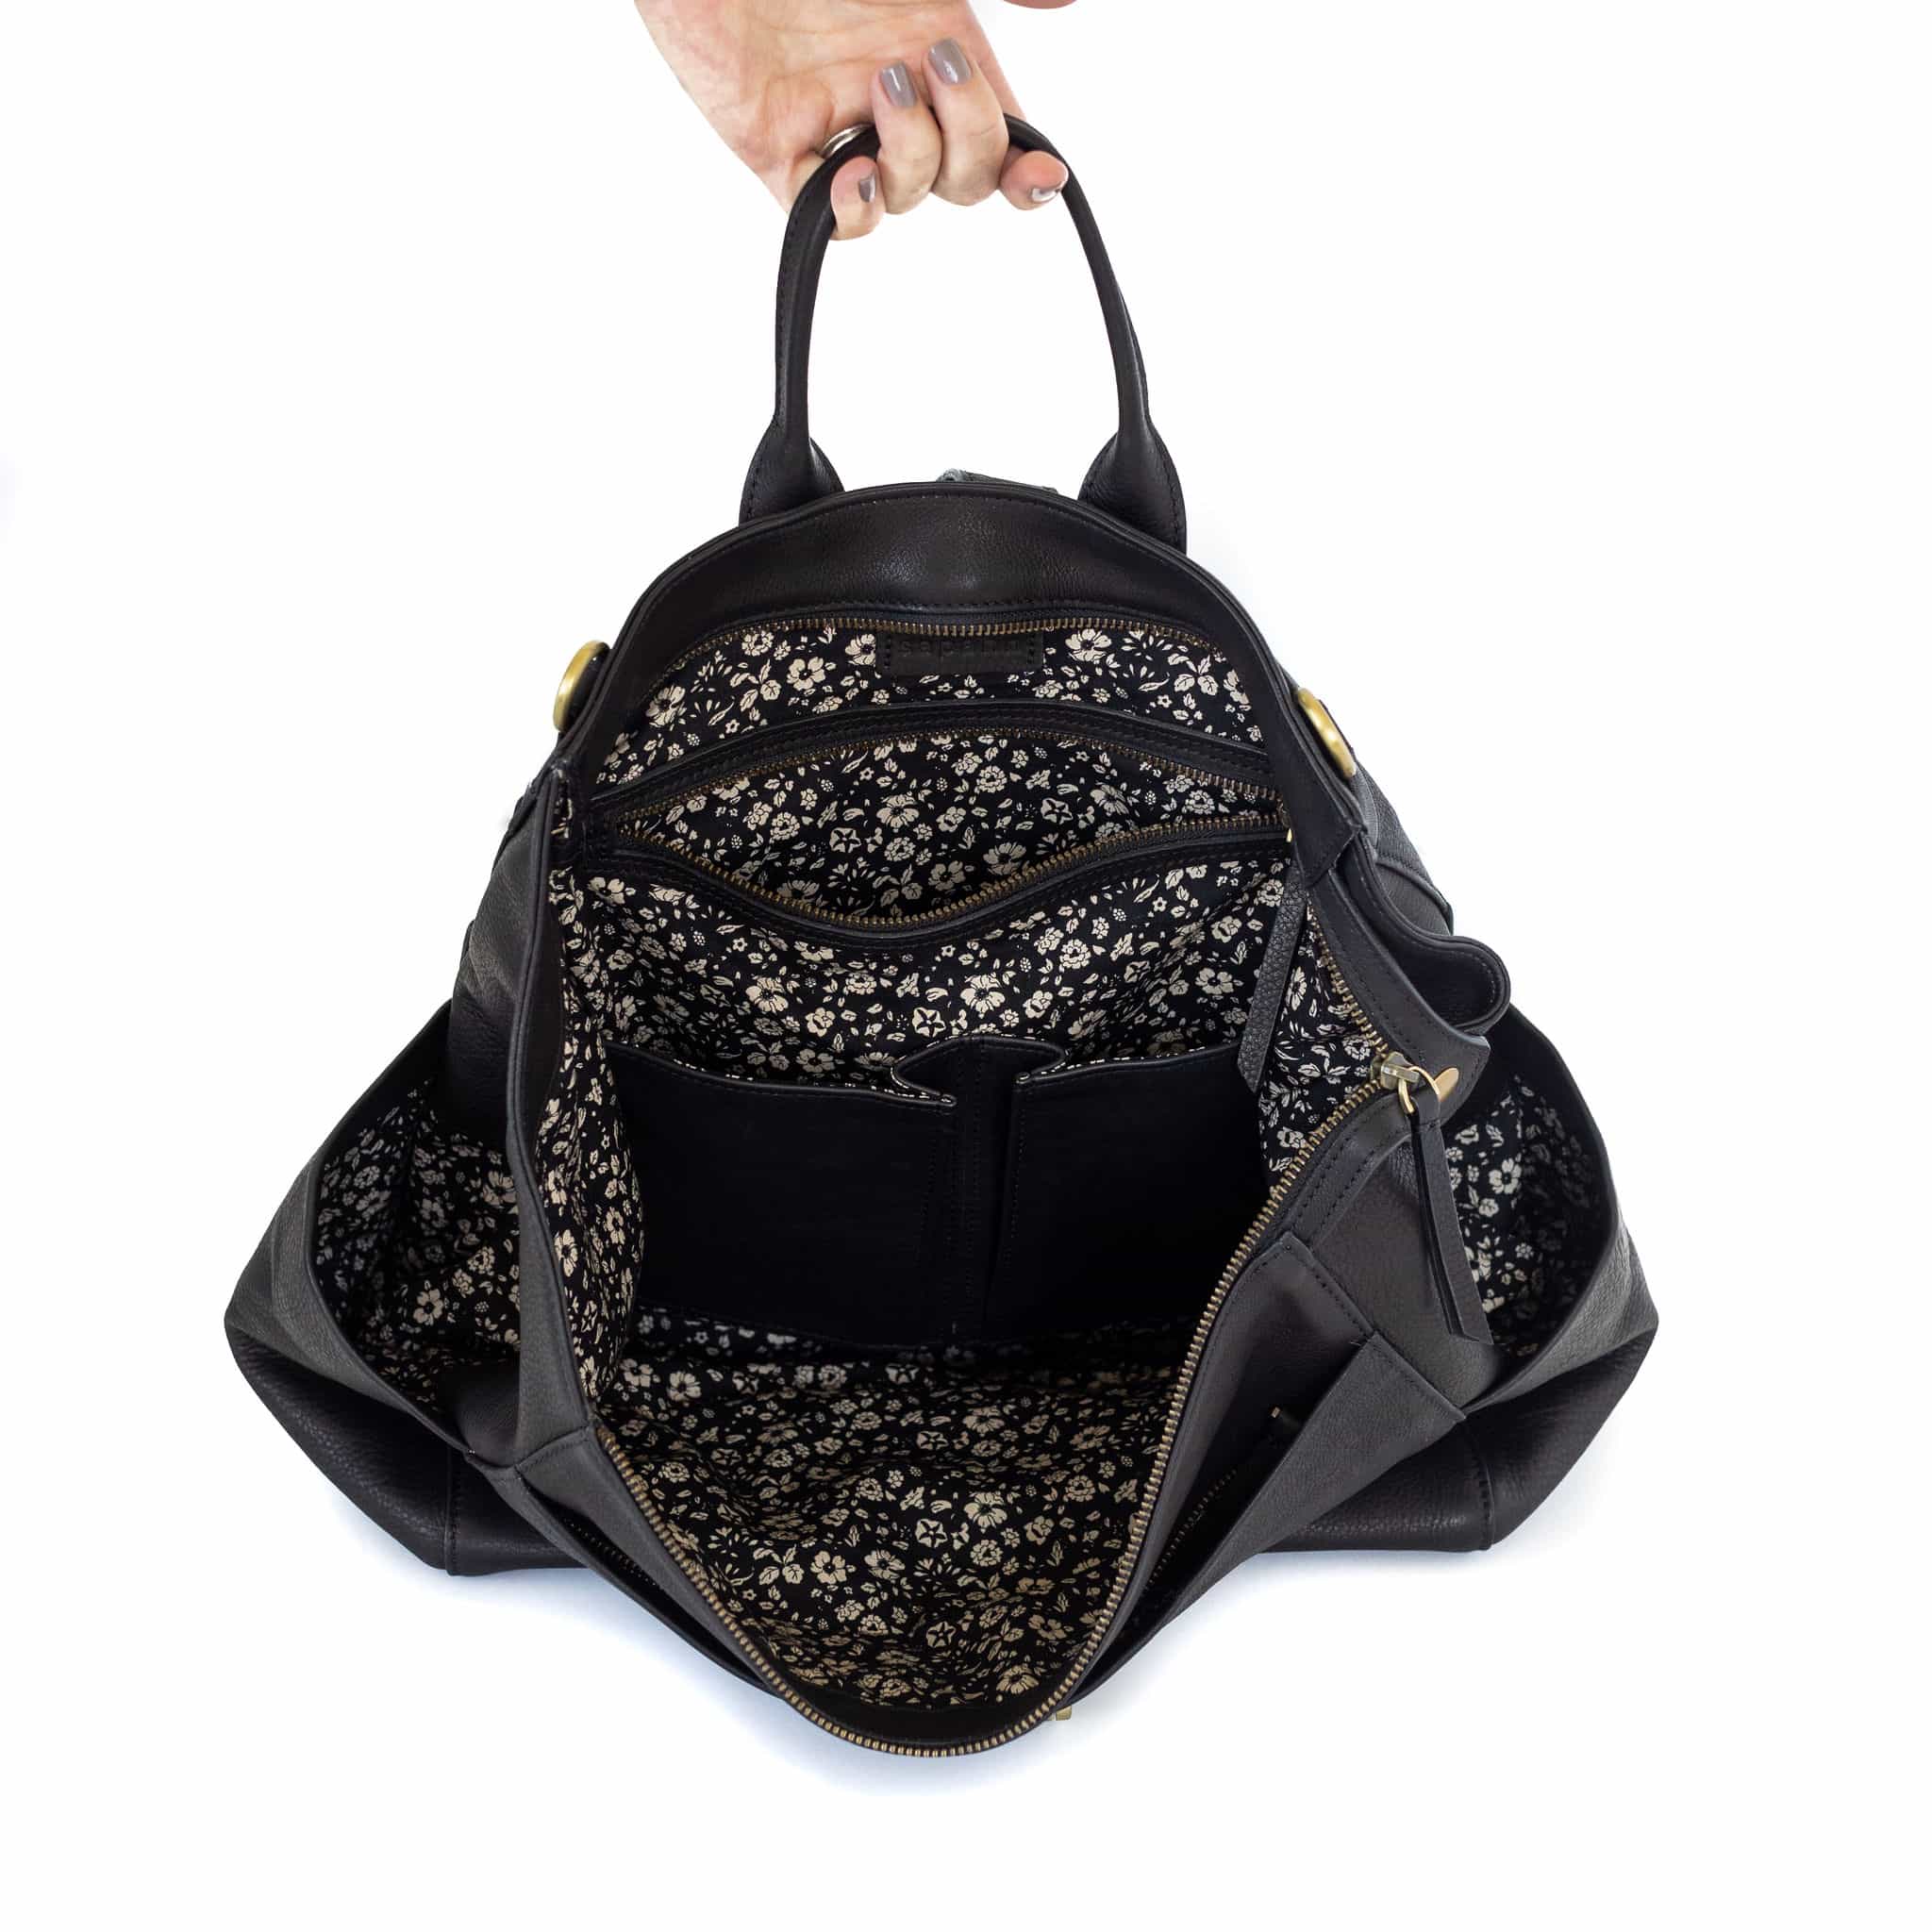 Natasha Convertible Backpack and Crossbody Bag